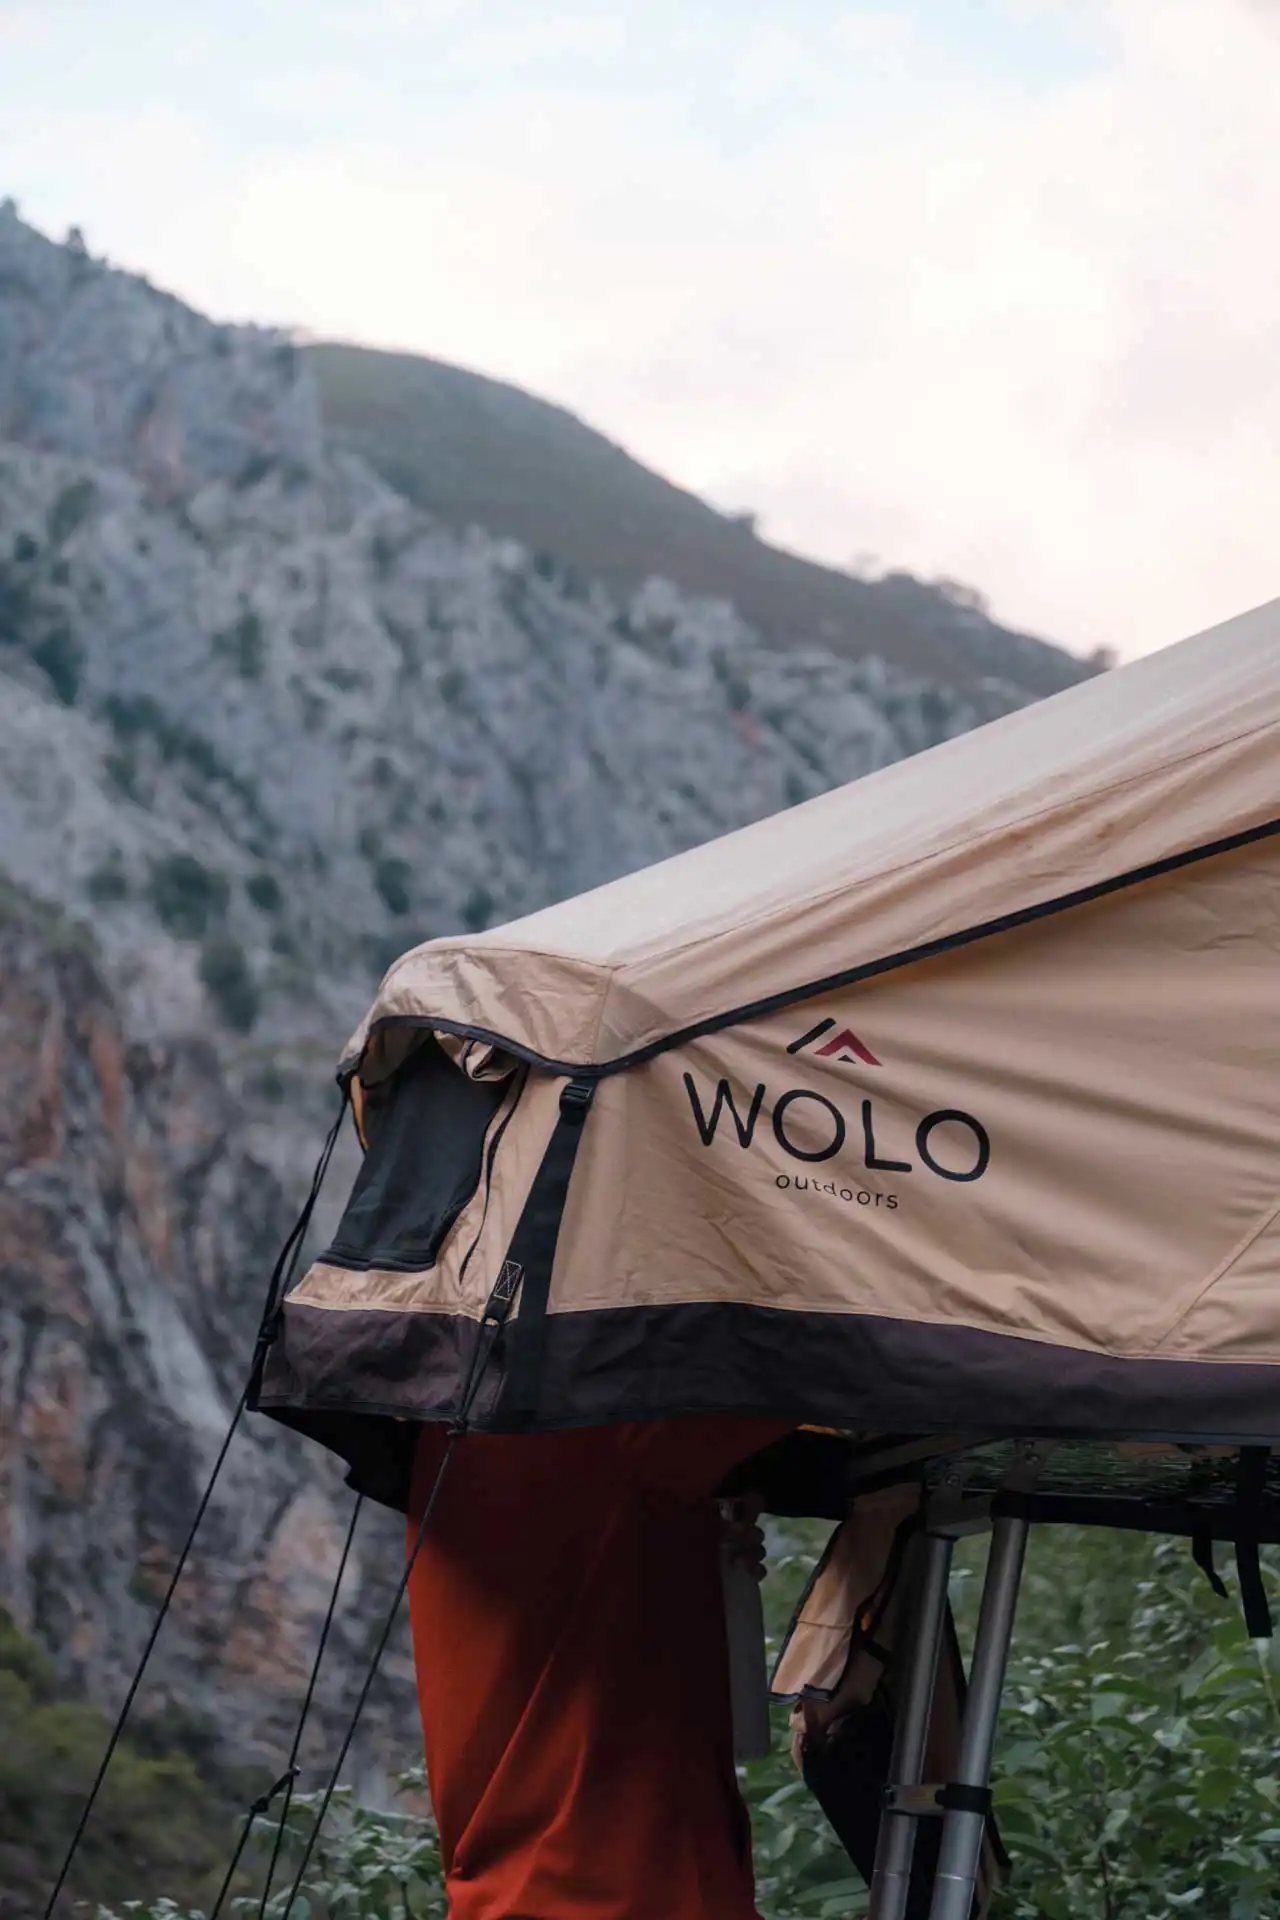 Tente de toit WOLO – Poncebos, Pics d'Europe, Espagne